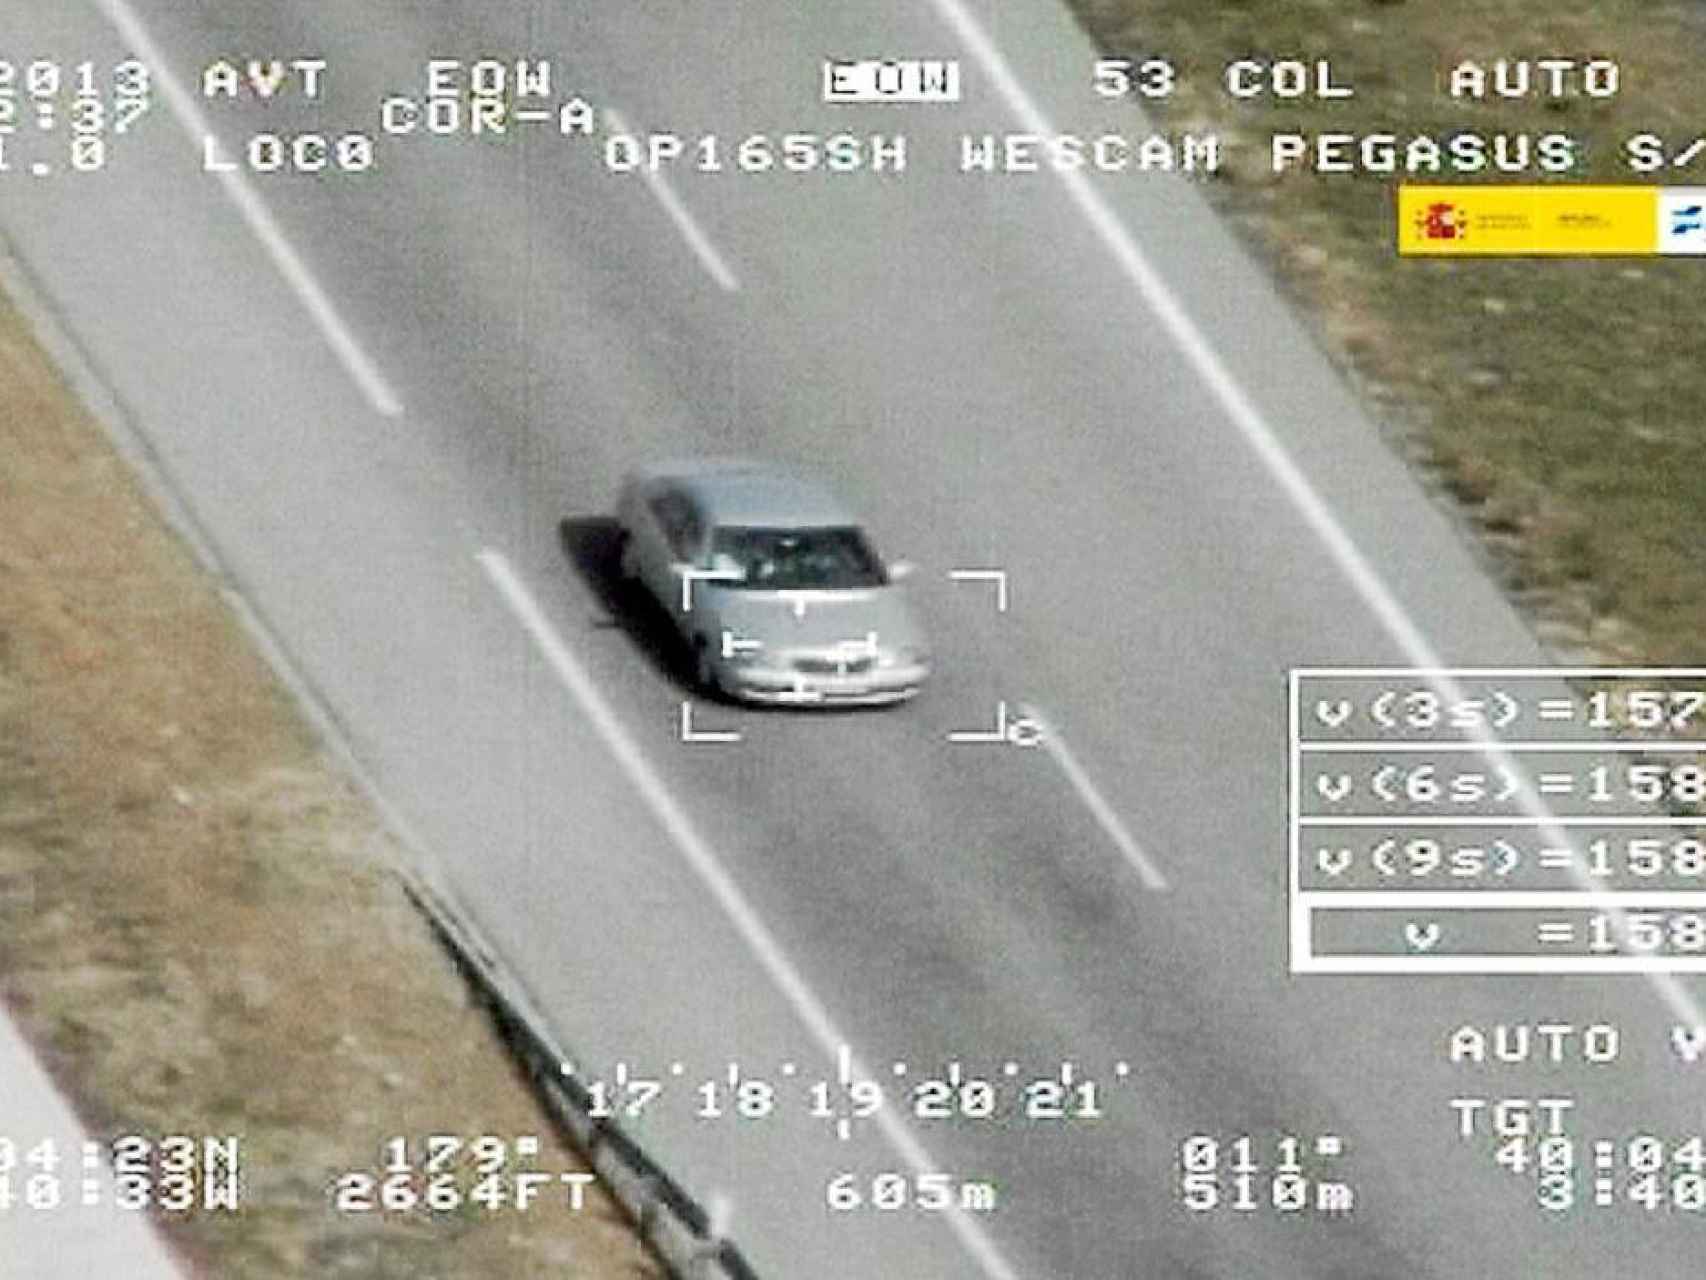 Vehículo capturado por una cámara-radar de vigilancia